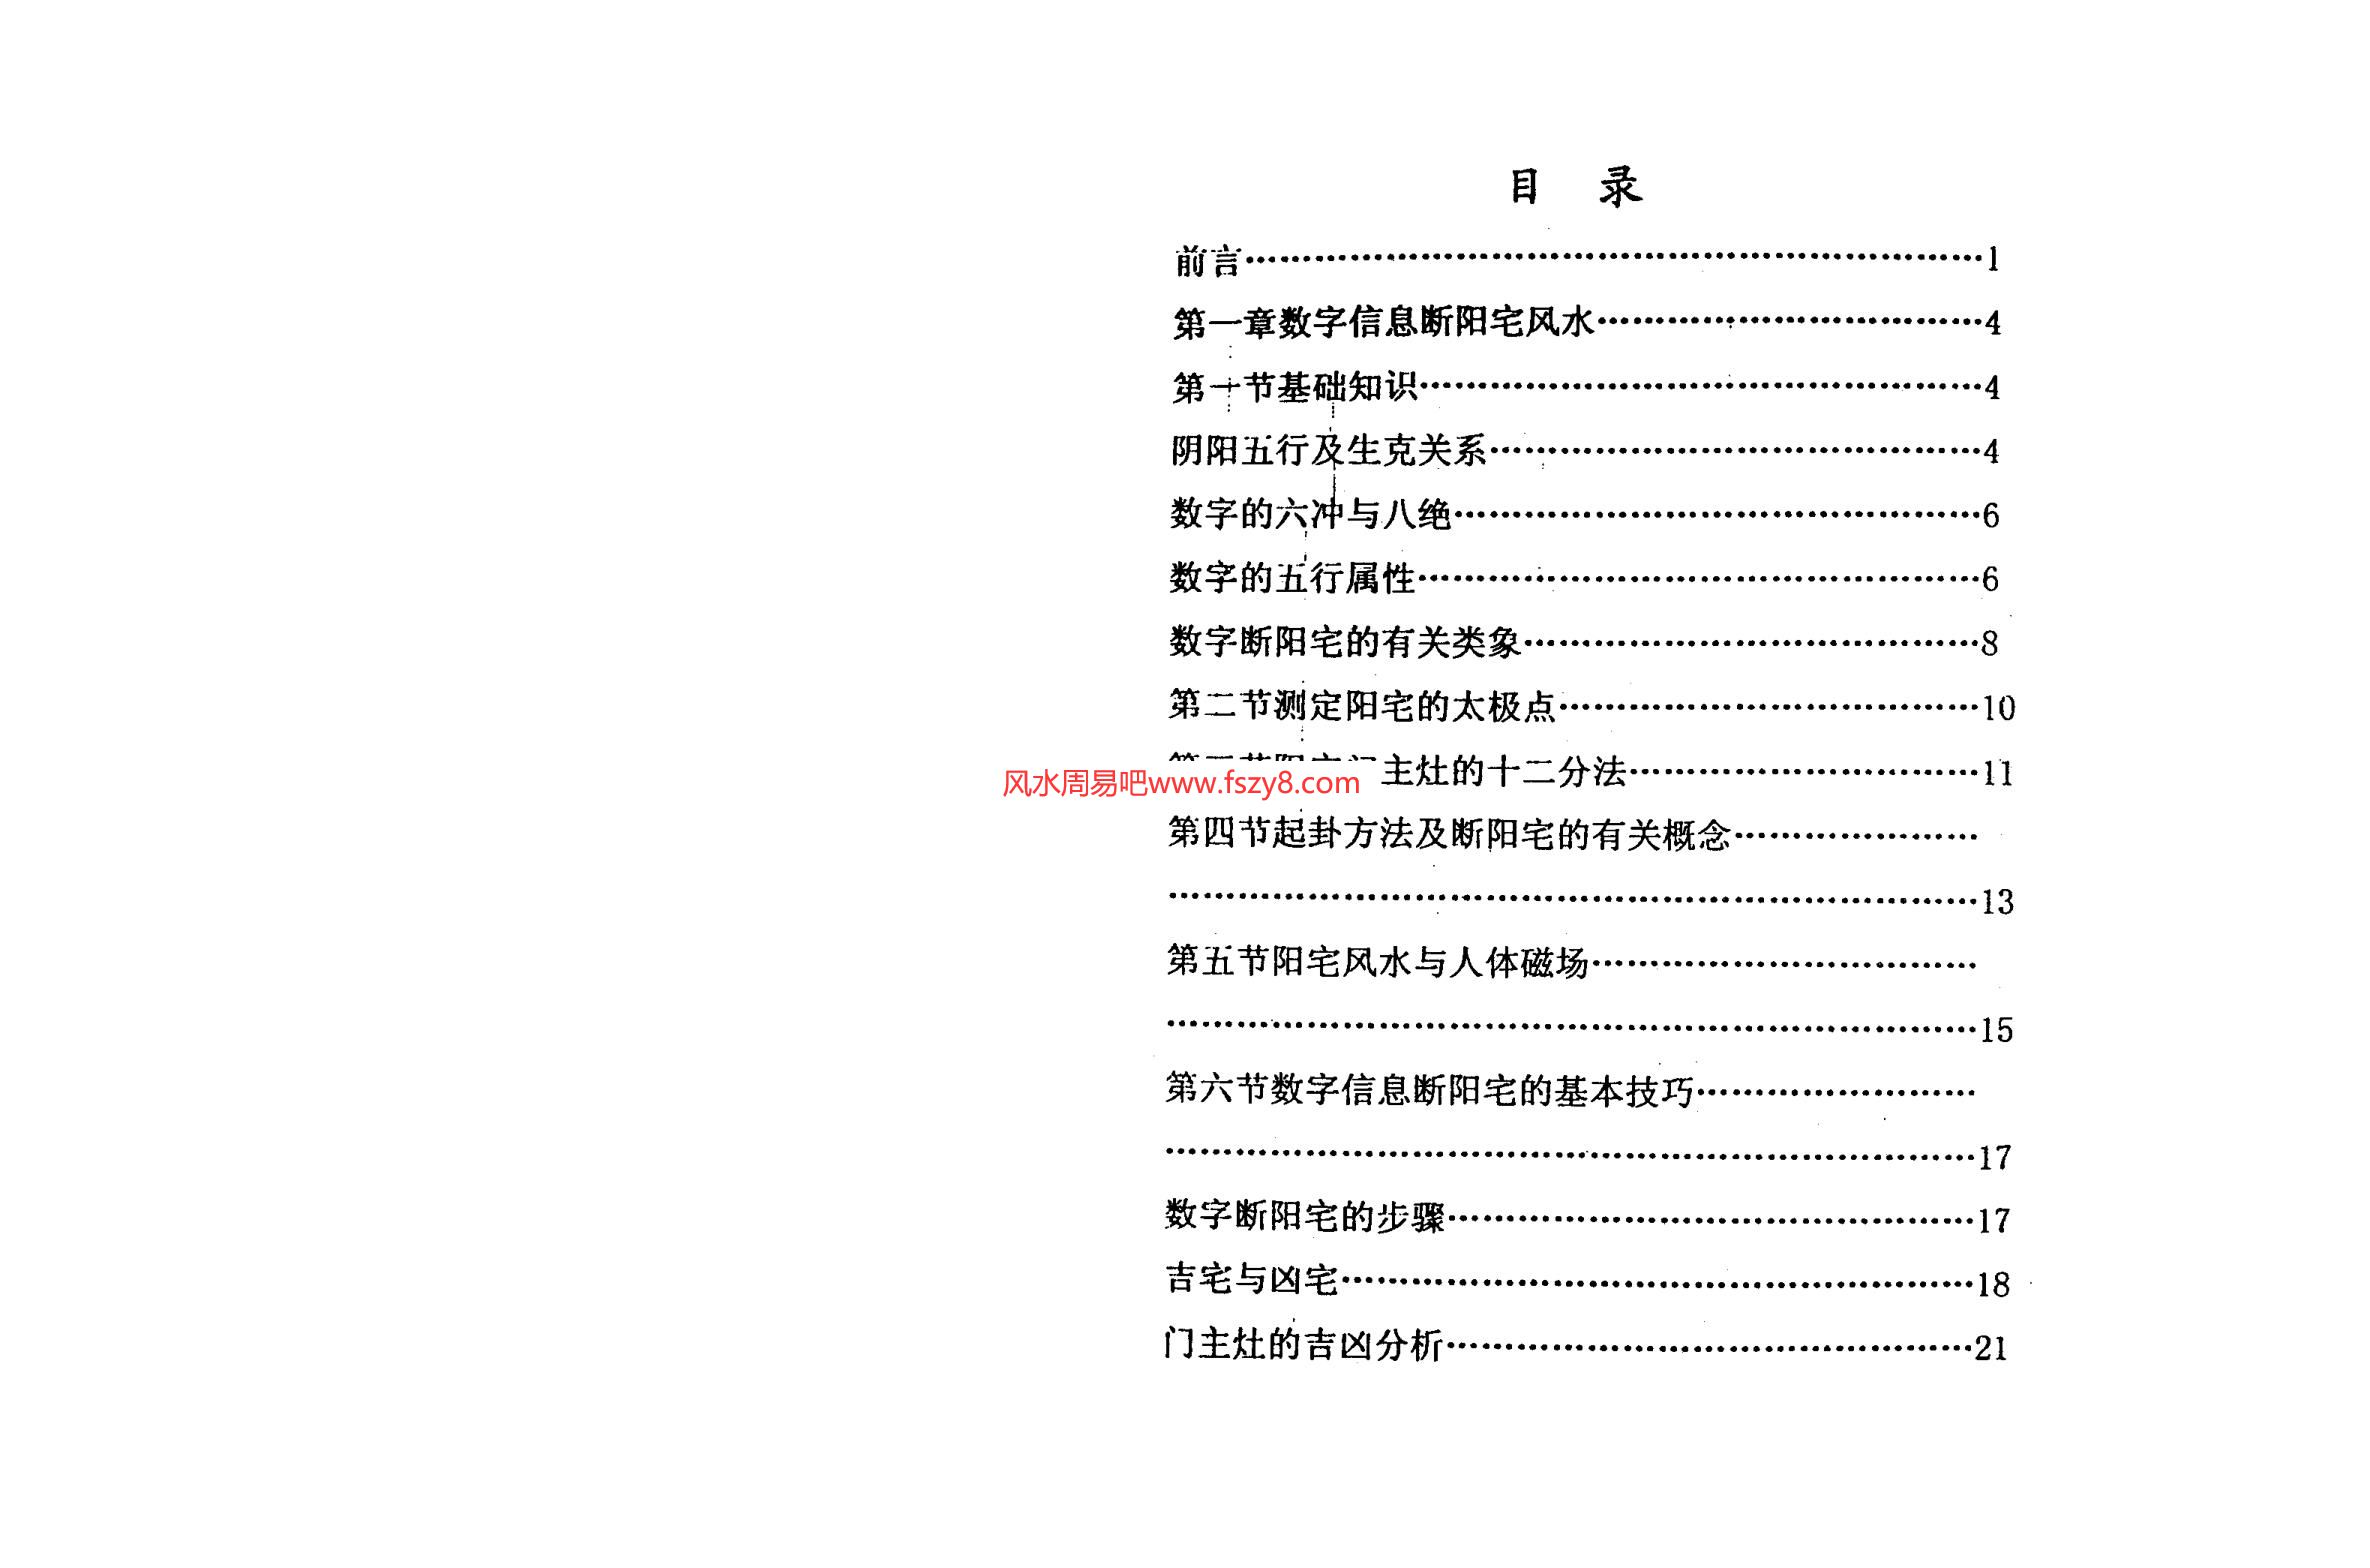 潘福星-数字信息断阳宅风水PDF电子书67页 潘福星数字信息断阳宅风水书(图2)